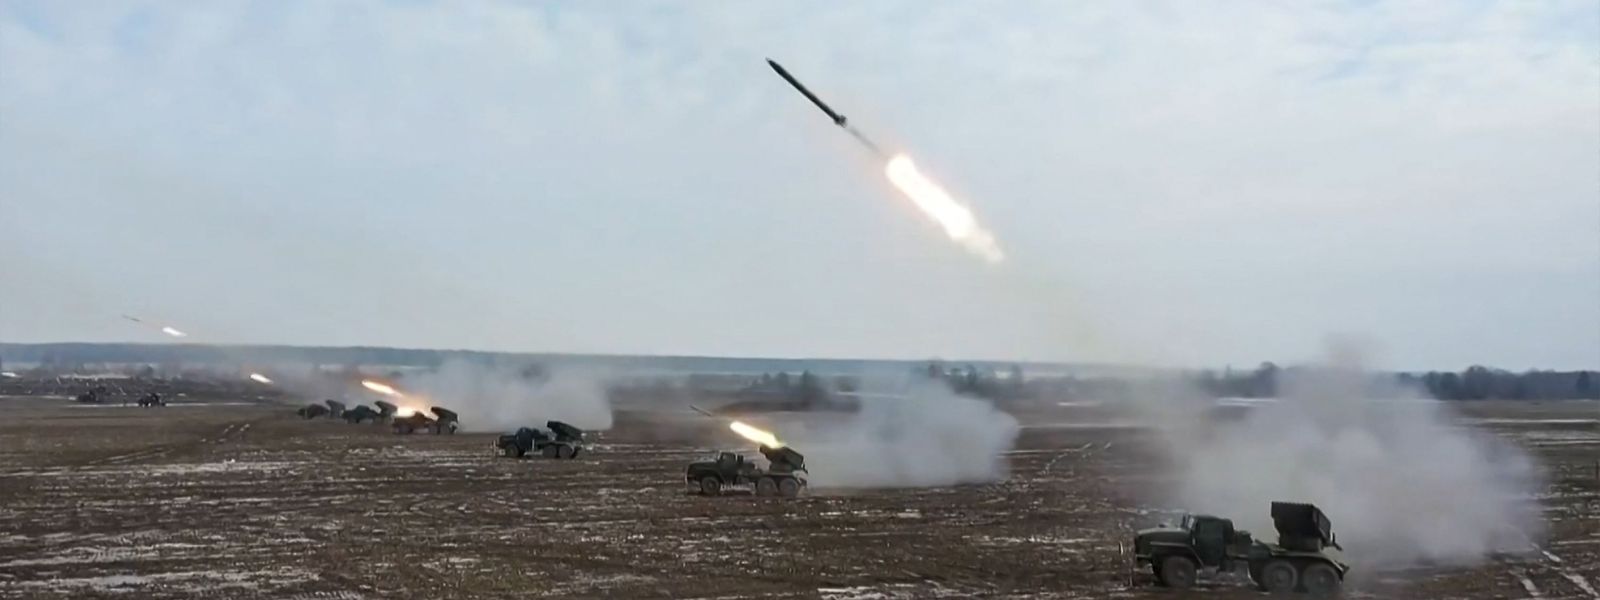 Exercícios das forças estratégicas, que incluem o lançamento de mísseis balísticos, terão a supervisão do presidente Vladimir Putin.